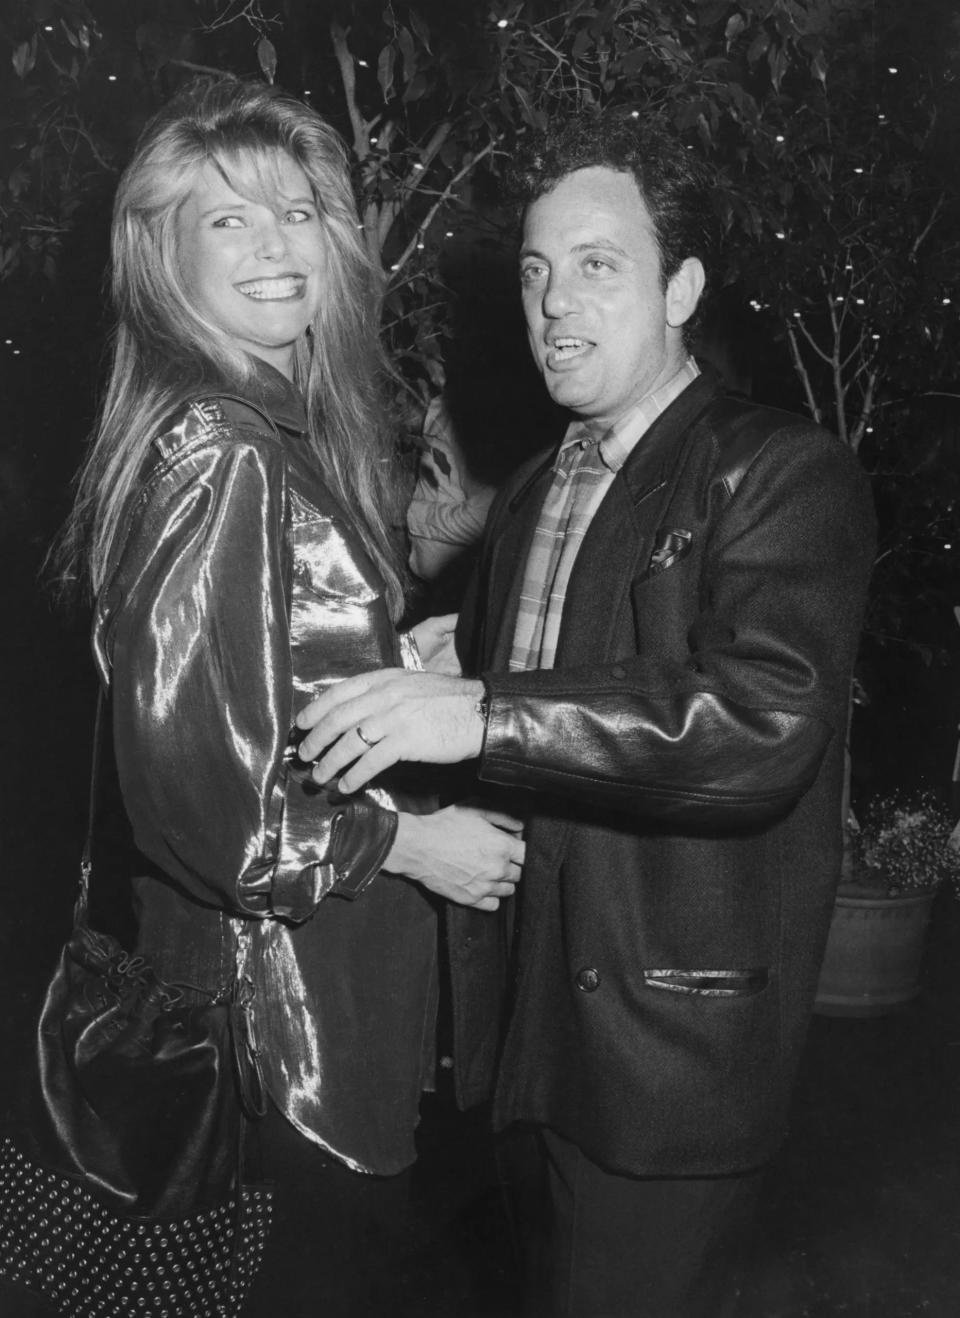 Christie Brinkley and Billy Joel divorced in 1994.